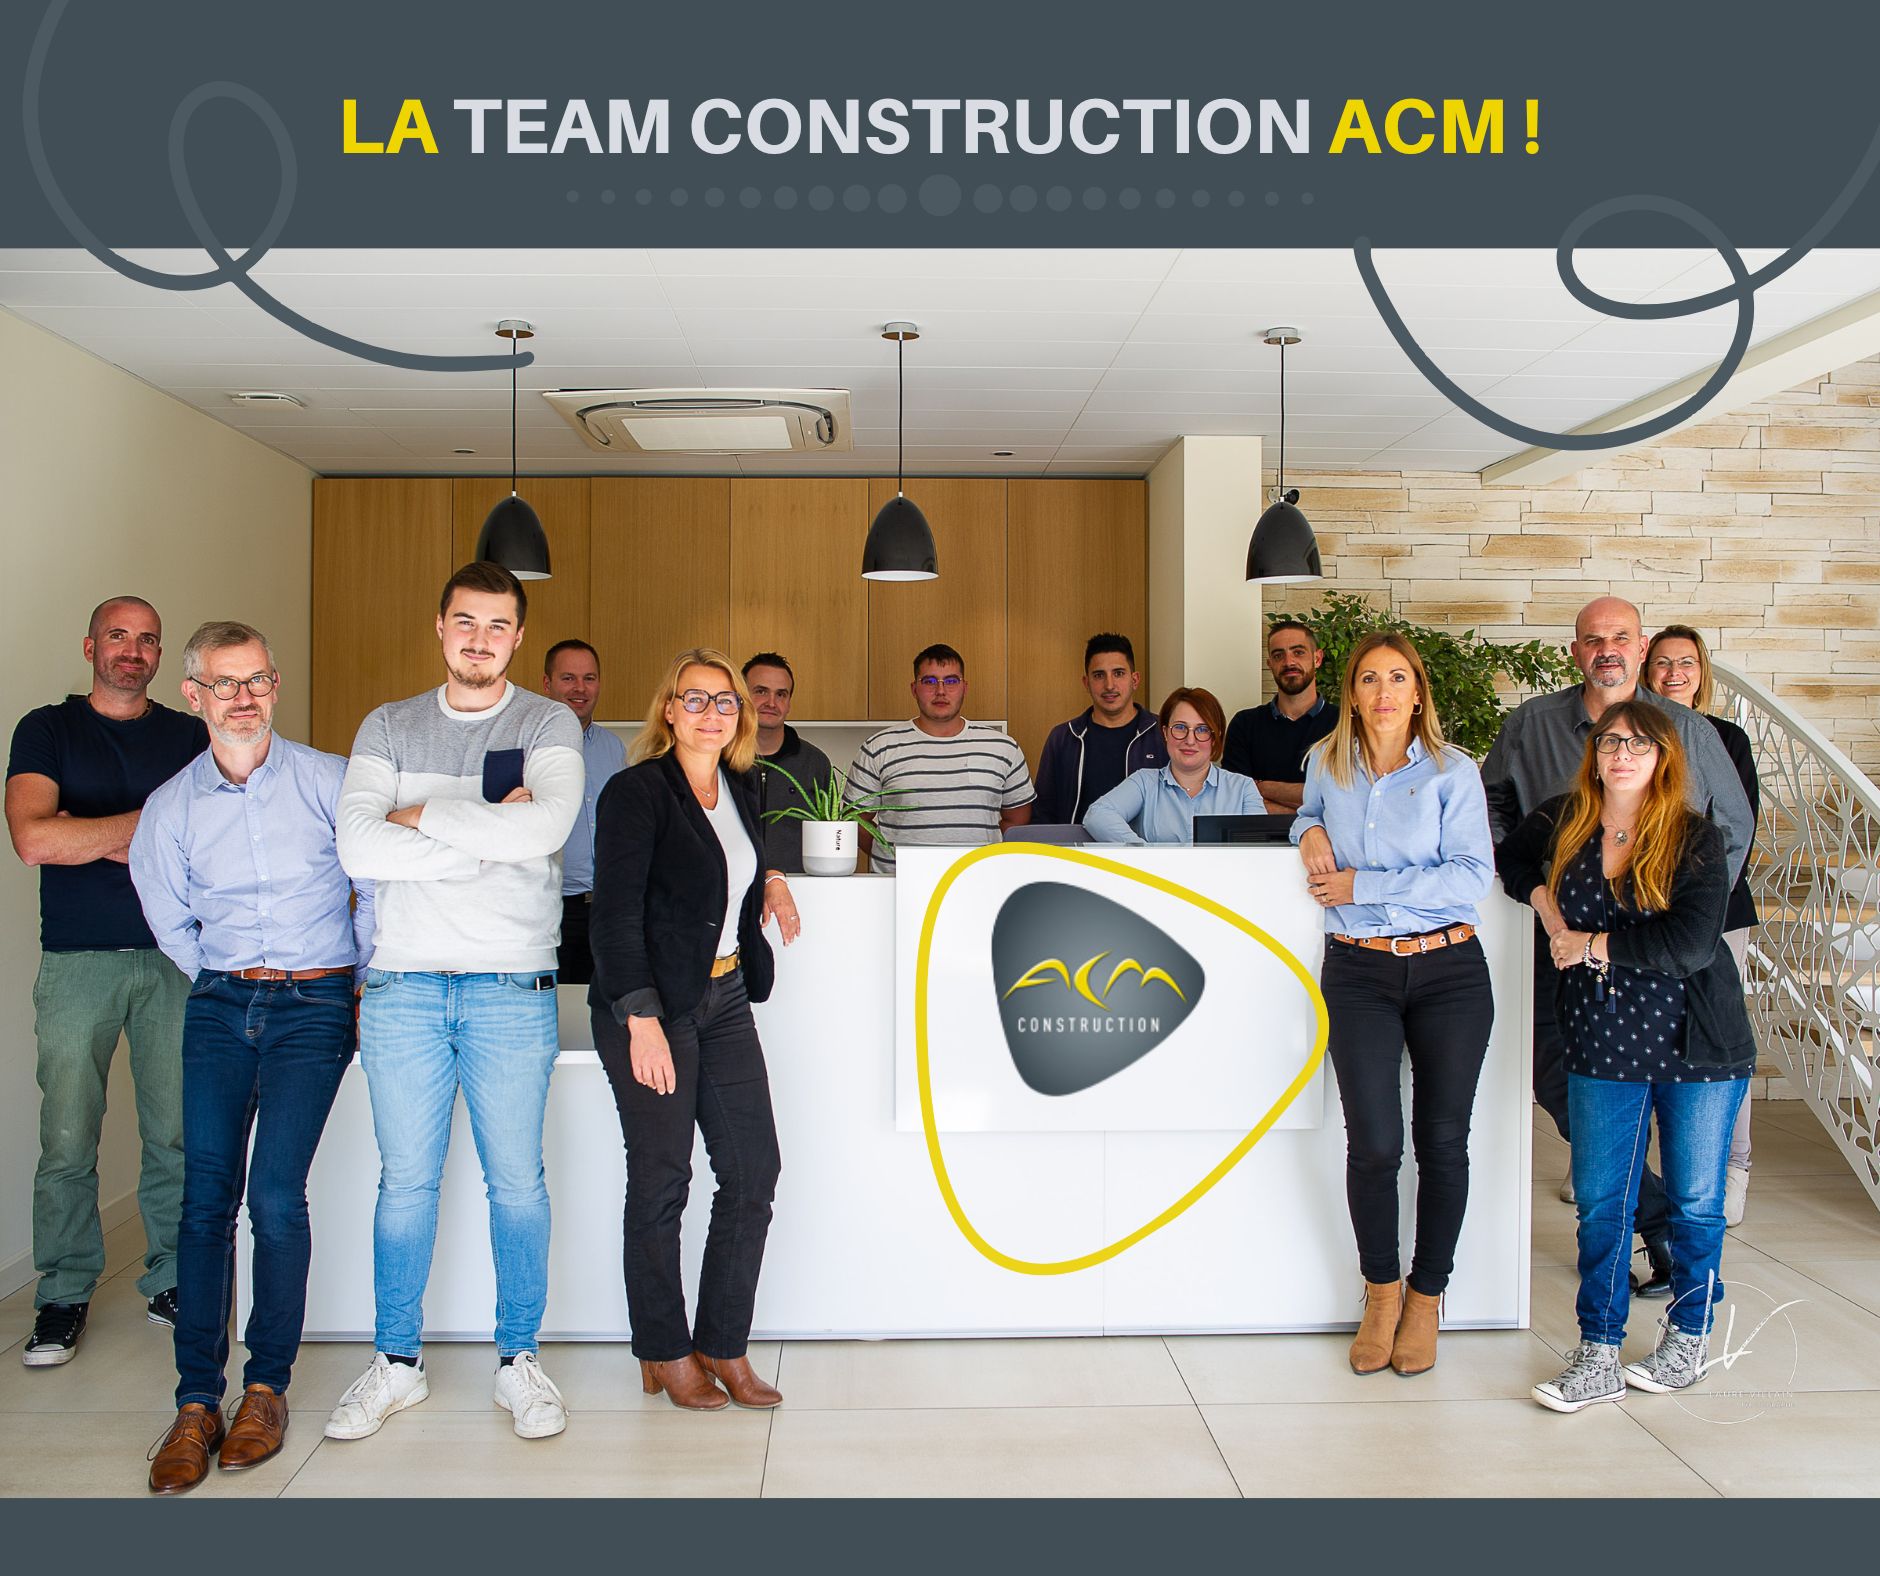 La Team CONSTRUCTION ACM